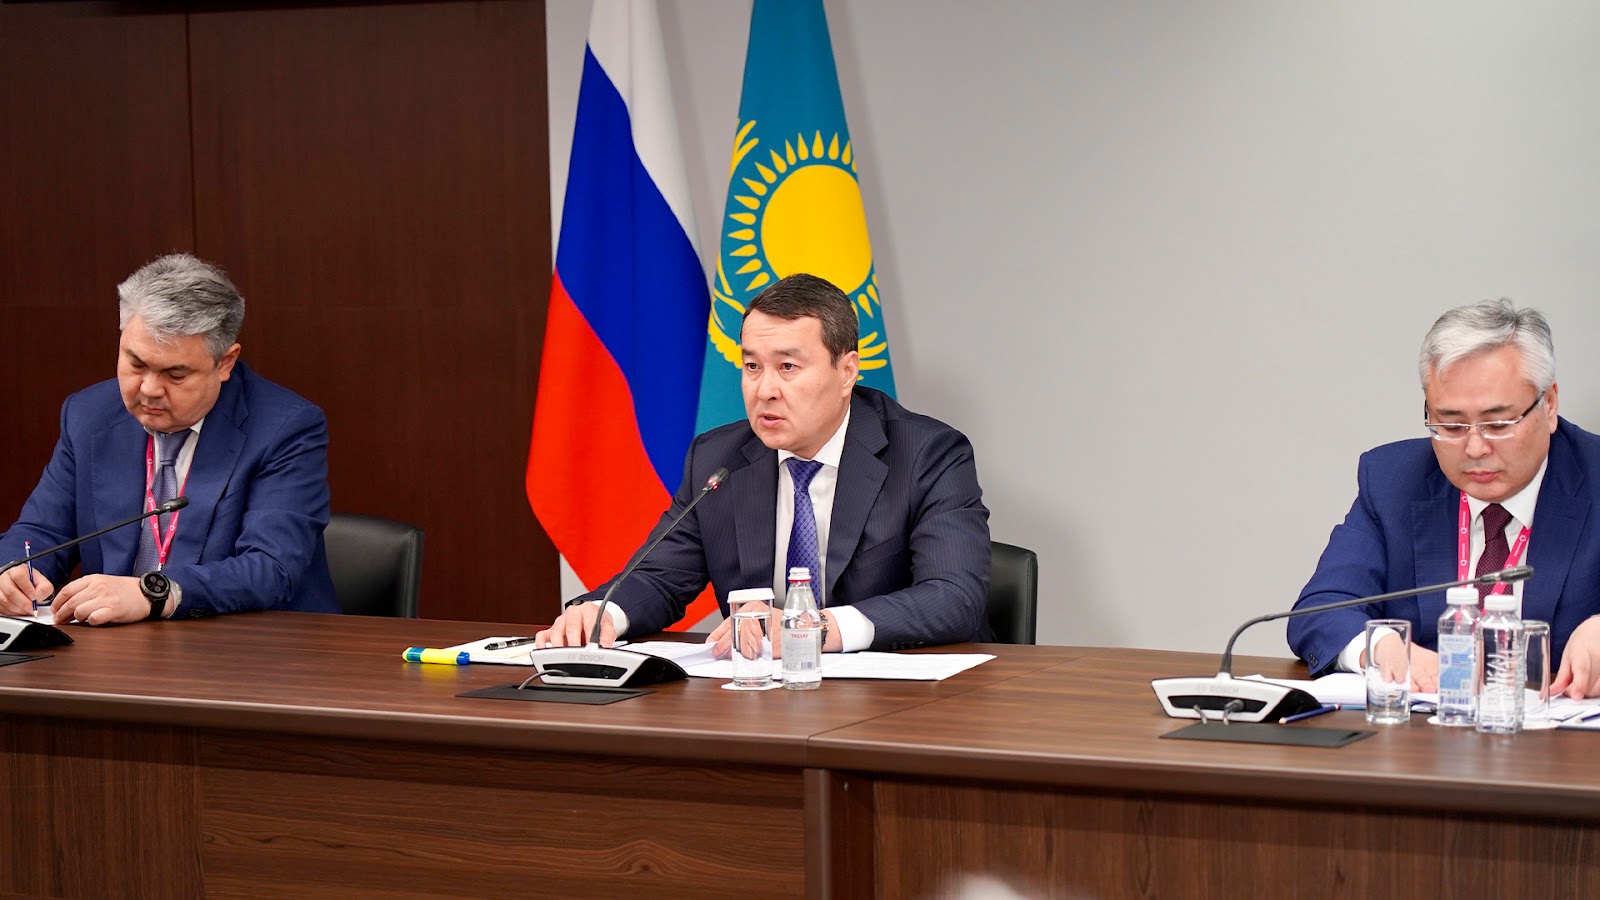 Казахстан настроен развивать стратегическое партнерство с Россией по всем направлениям — Алихан Смаилов